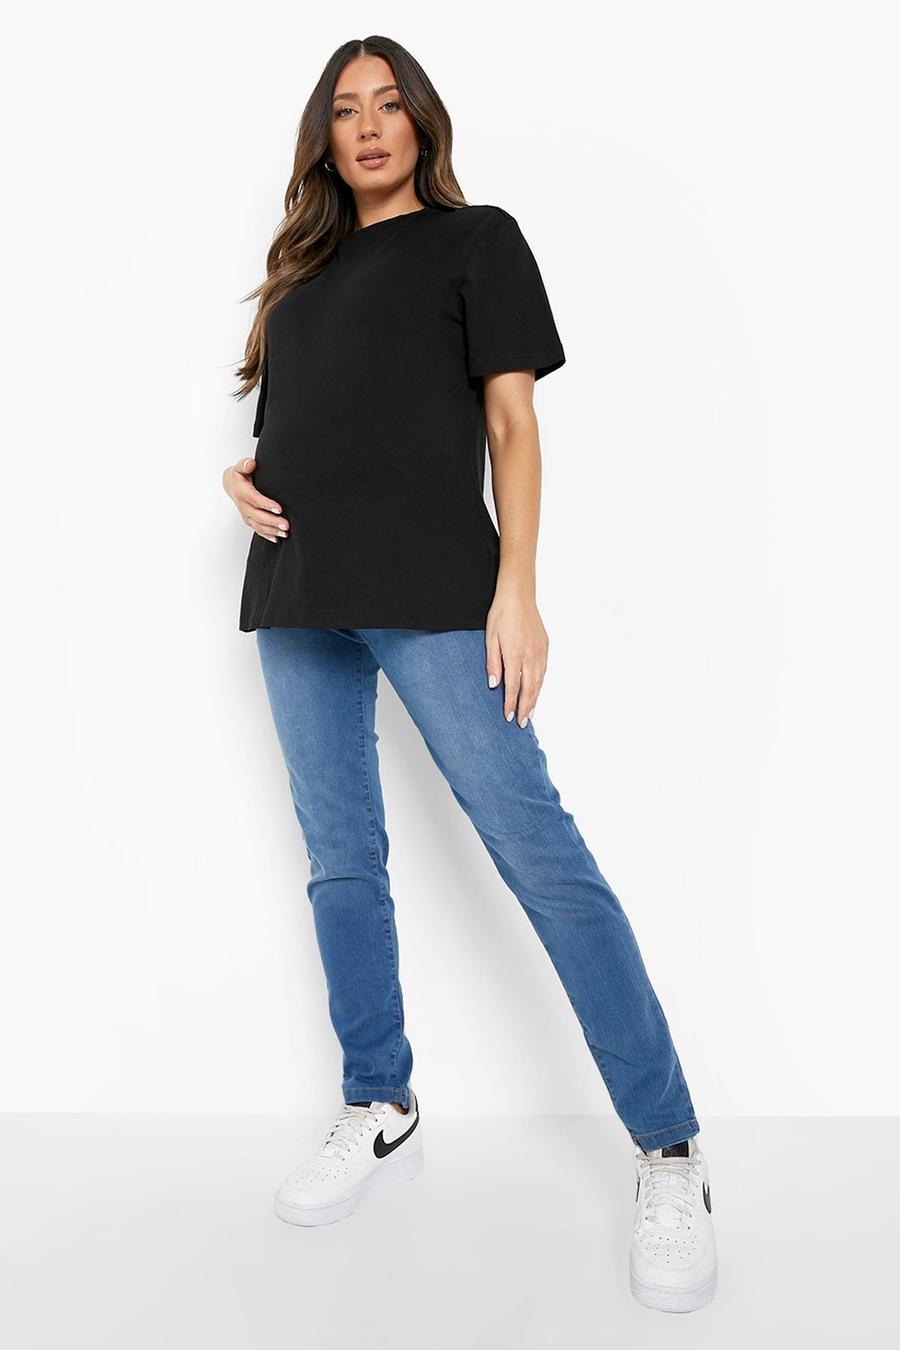 כחול ביניים azul סקיני ג'ינס מעל לבטן בגדי היריון